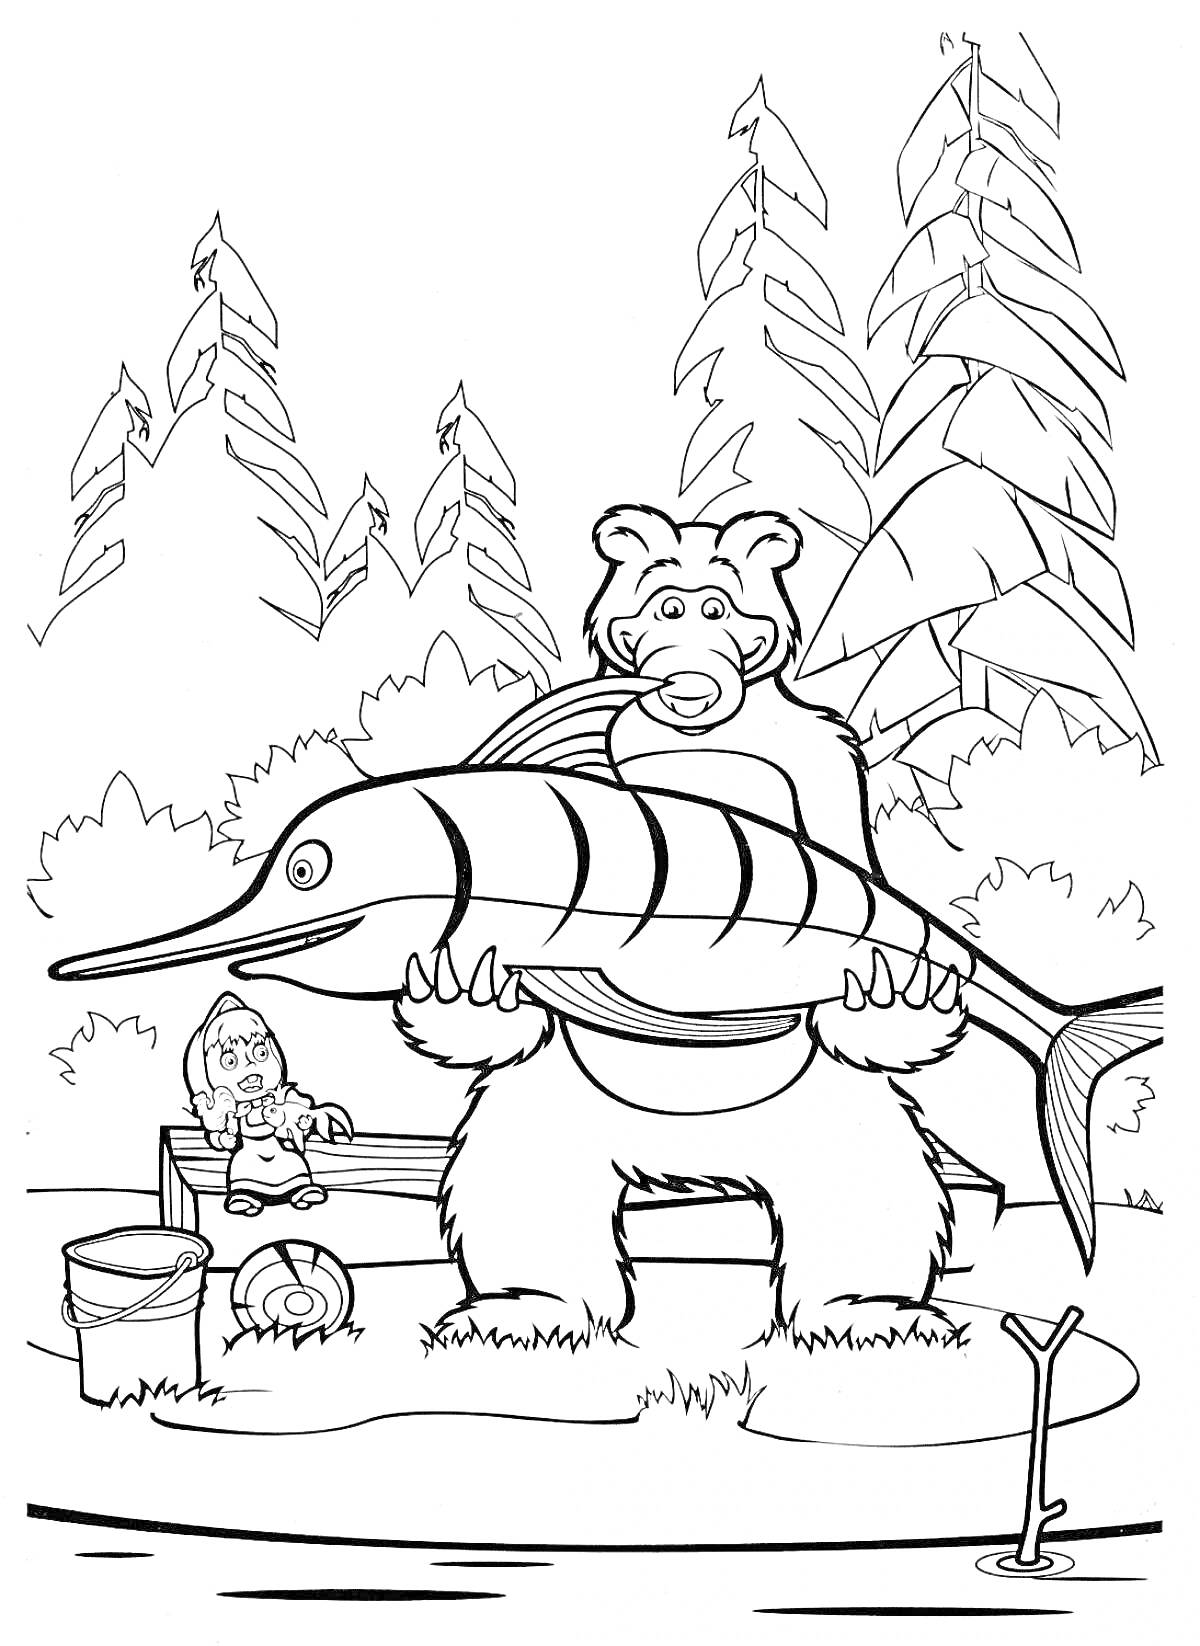 Раскраска Медведь с большой рыбой на берегу реки рядом с маленькой девочкой на скамейке, лесом, ветвями деревьев, ведром и удочкой в воде